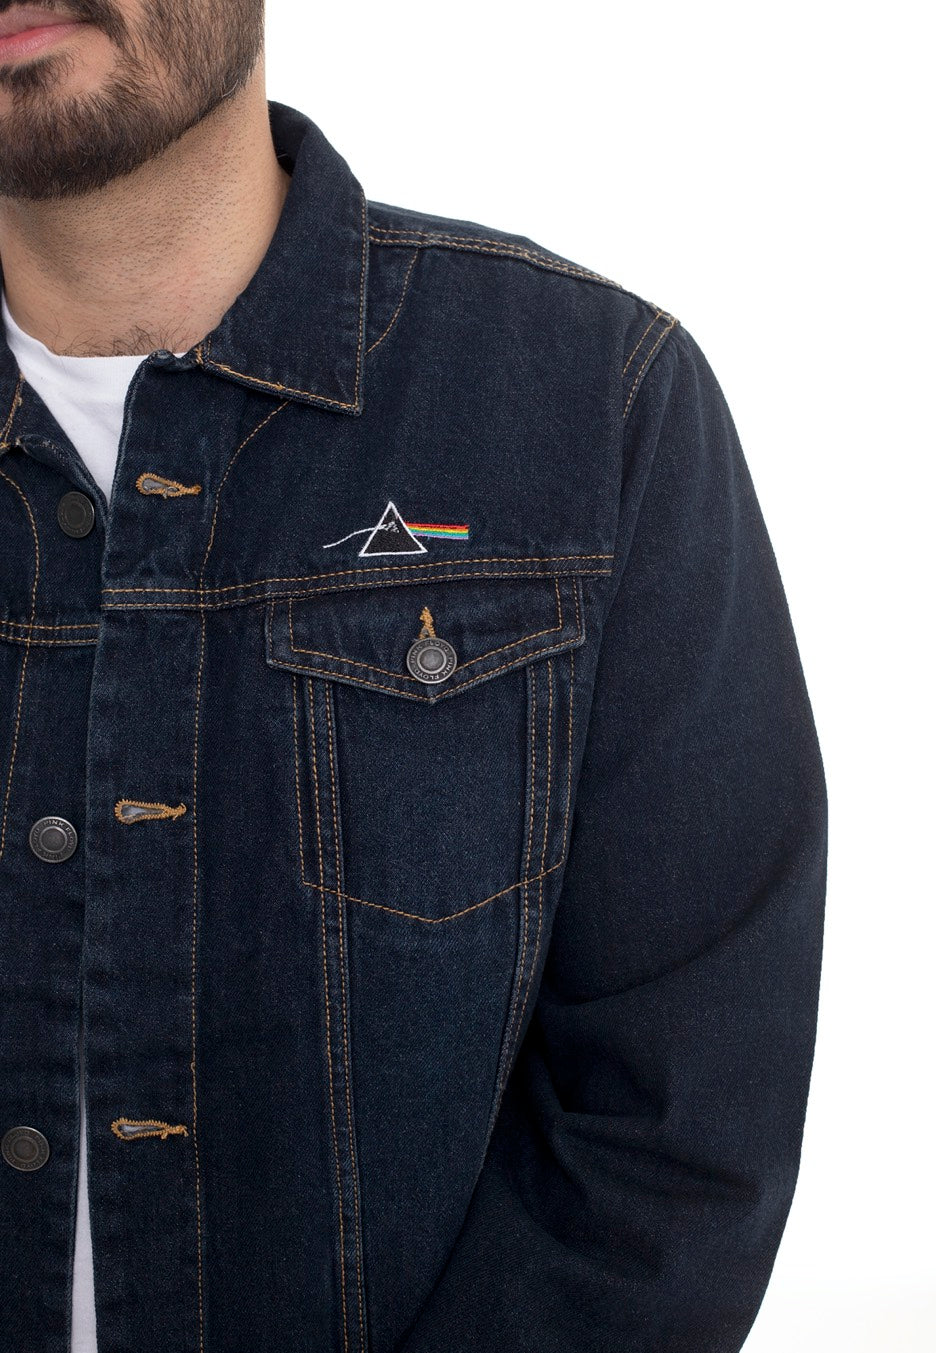 Pink Floyd - DSOTM Prism - Jeans Jacket